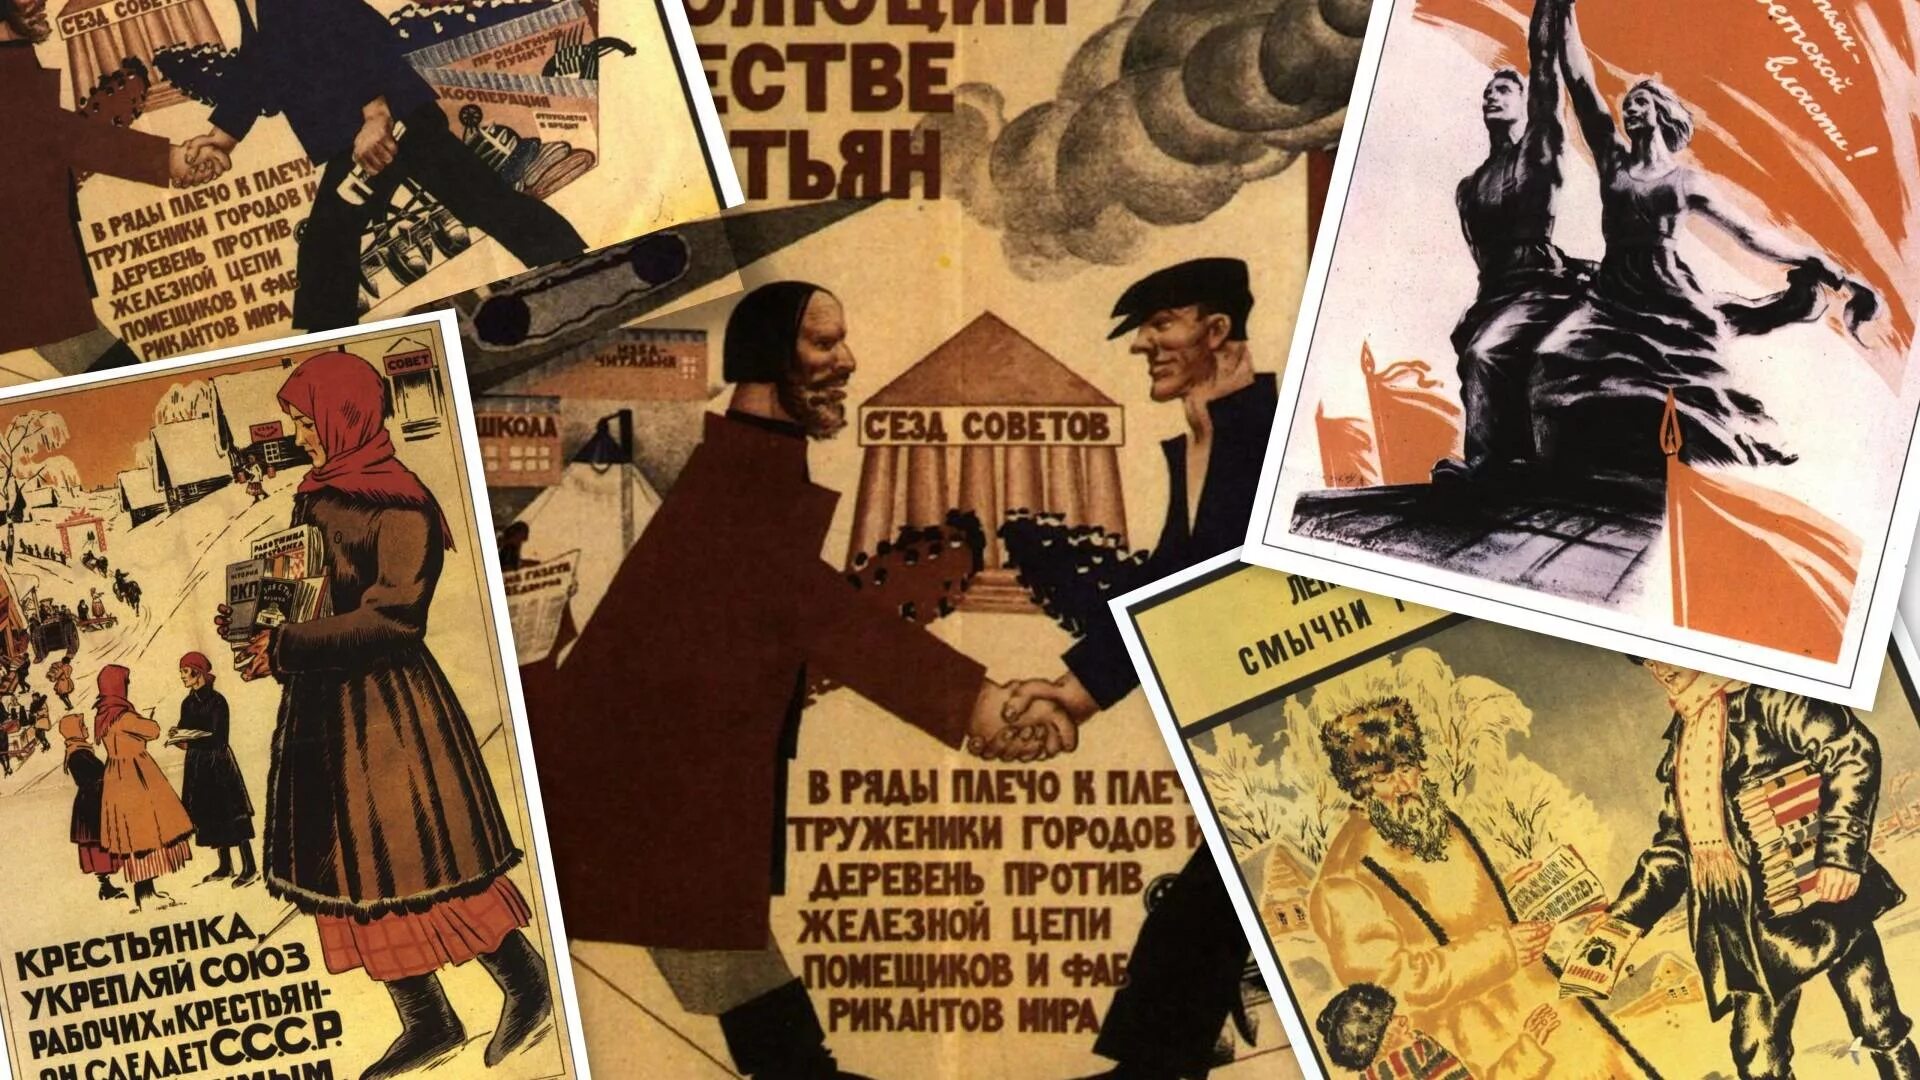 Страны советов 20. Советские плакаты. Плакаты в Советском стиле. Советские довоенные плакаты.